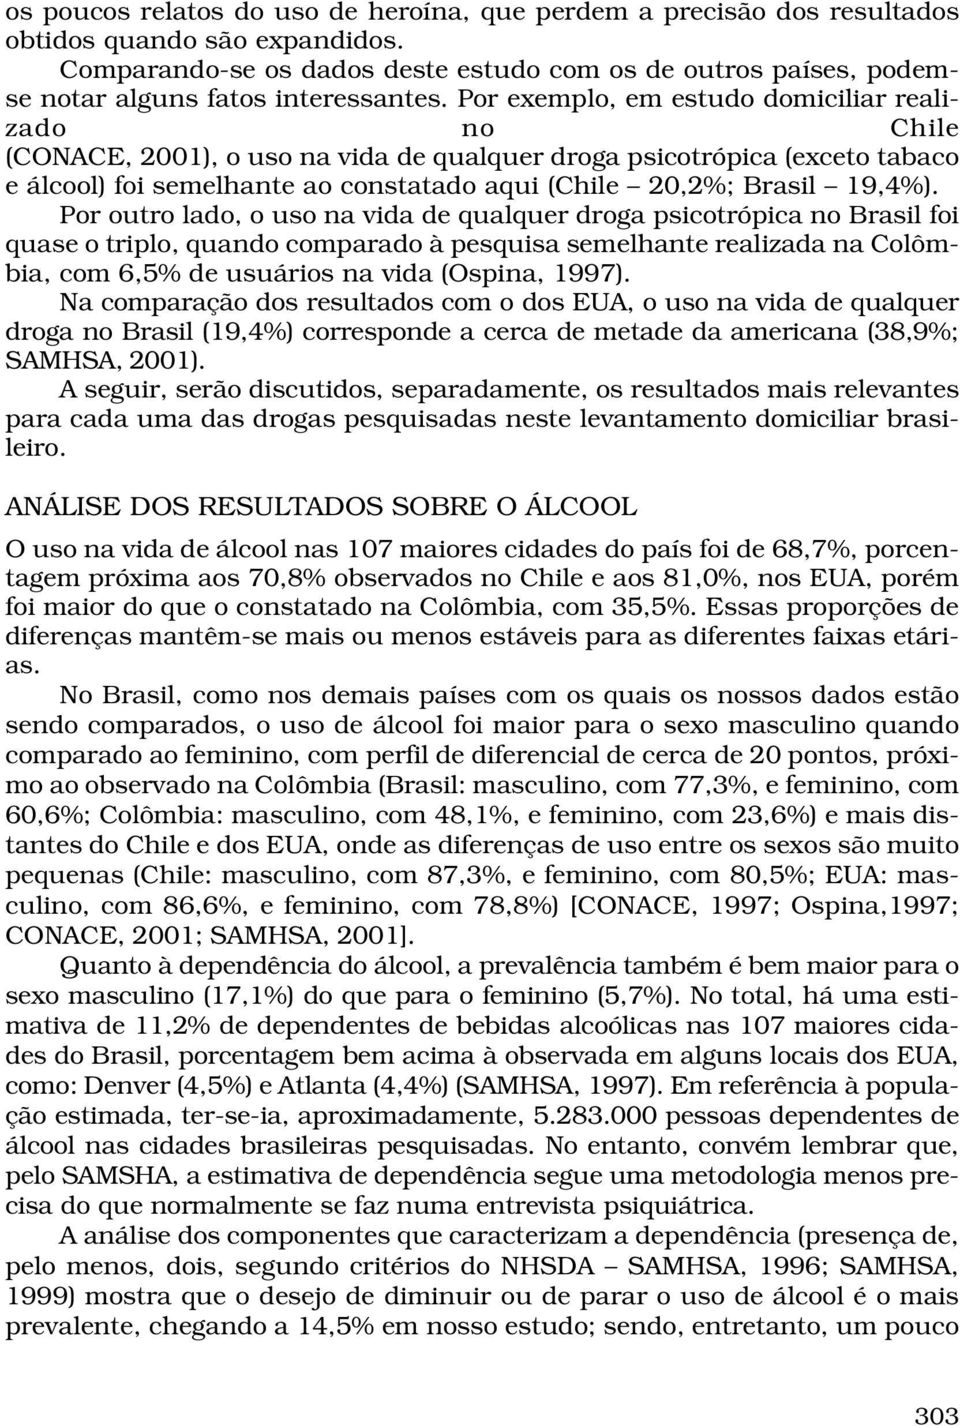 Por exemplo, em estudo domiciliar realizado no Chile (CONACE, 2001), o uso na vida de qualquer droga psicotrópica (exceto tabaco e álcool) foi semelhante ao constatado aqui (Chile 20,2%; Brasil